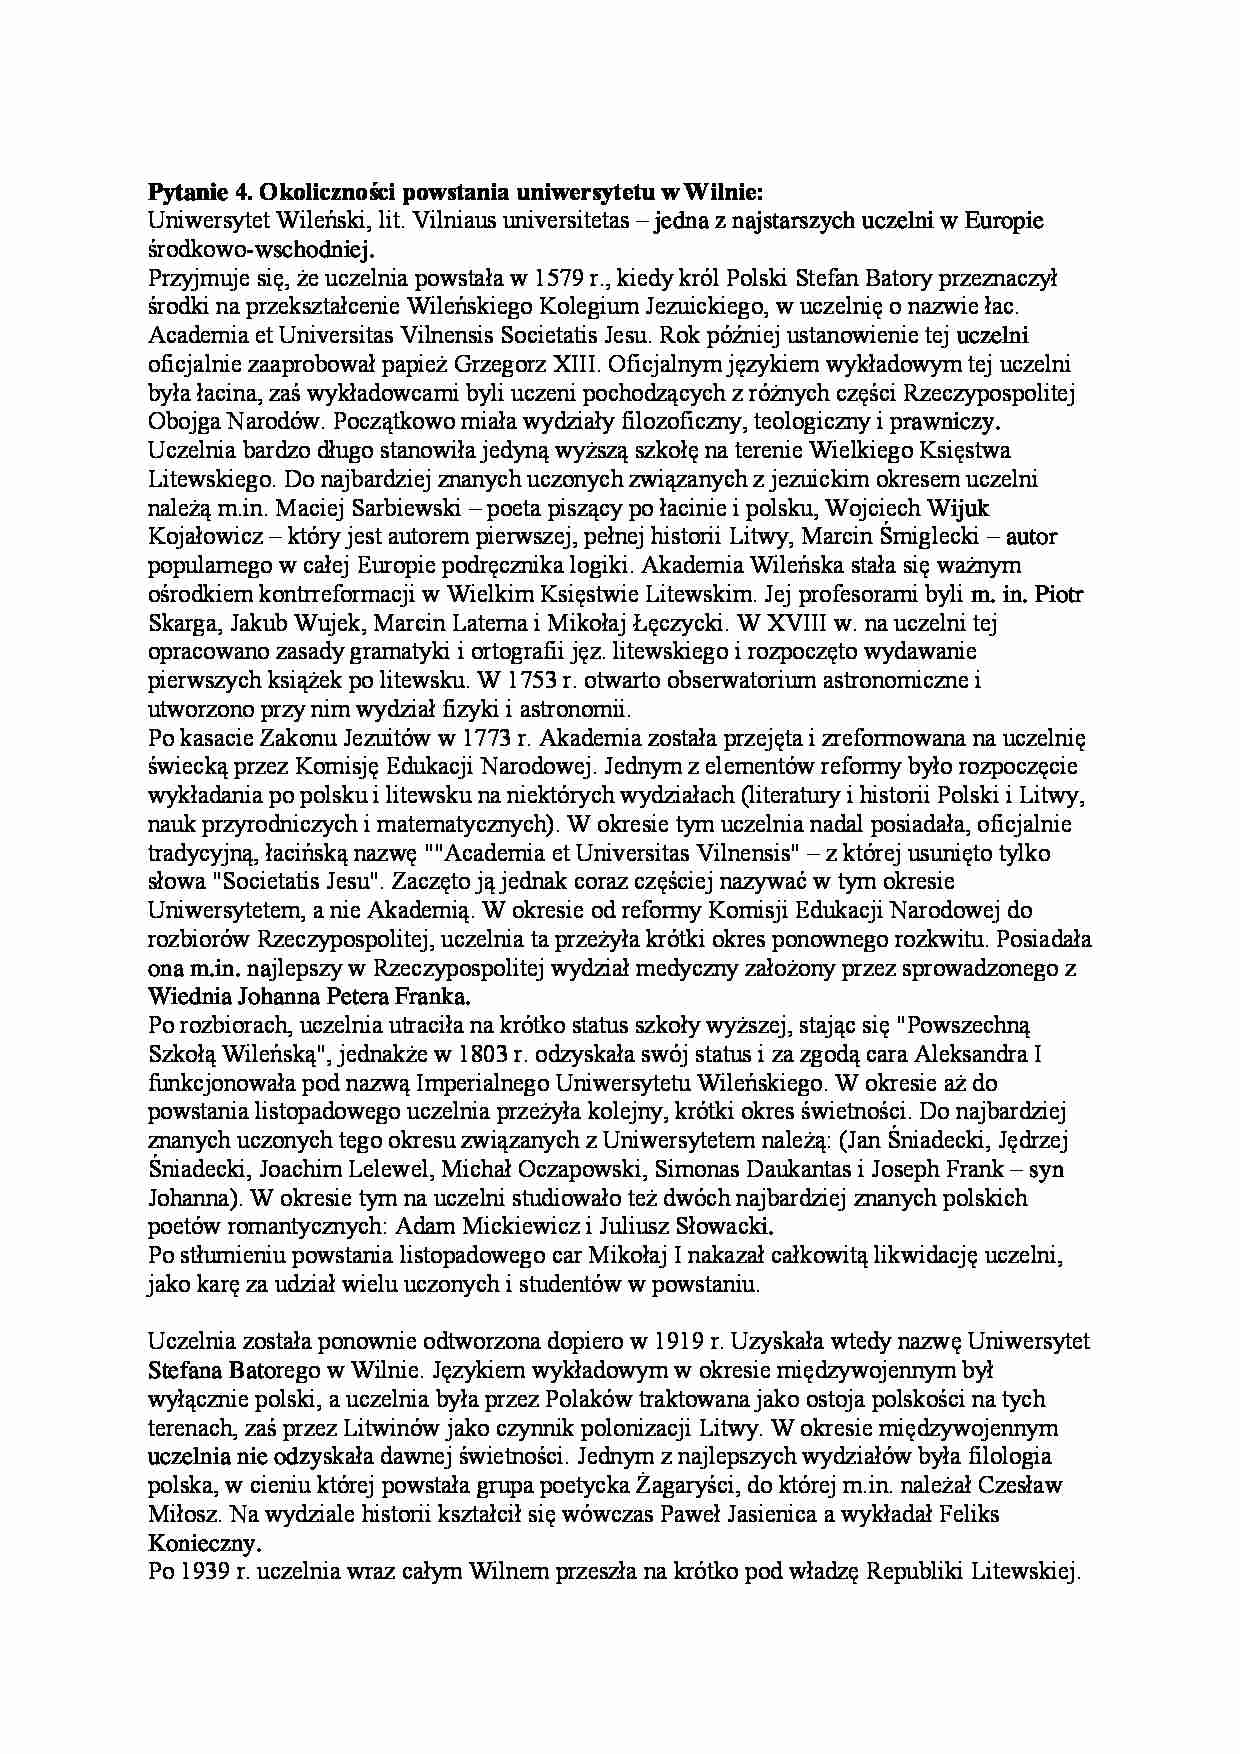 Okoliczności powstania uniwersytetu w Wilnie - strona 1